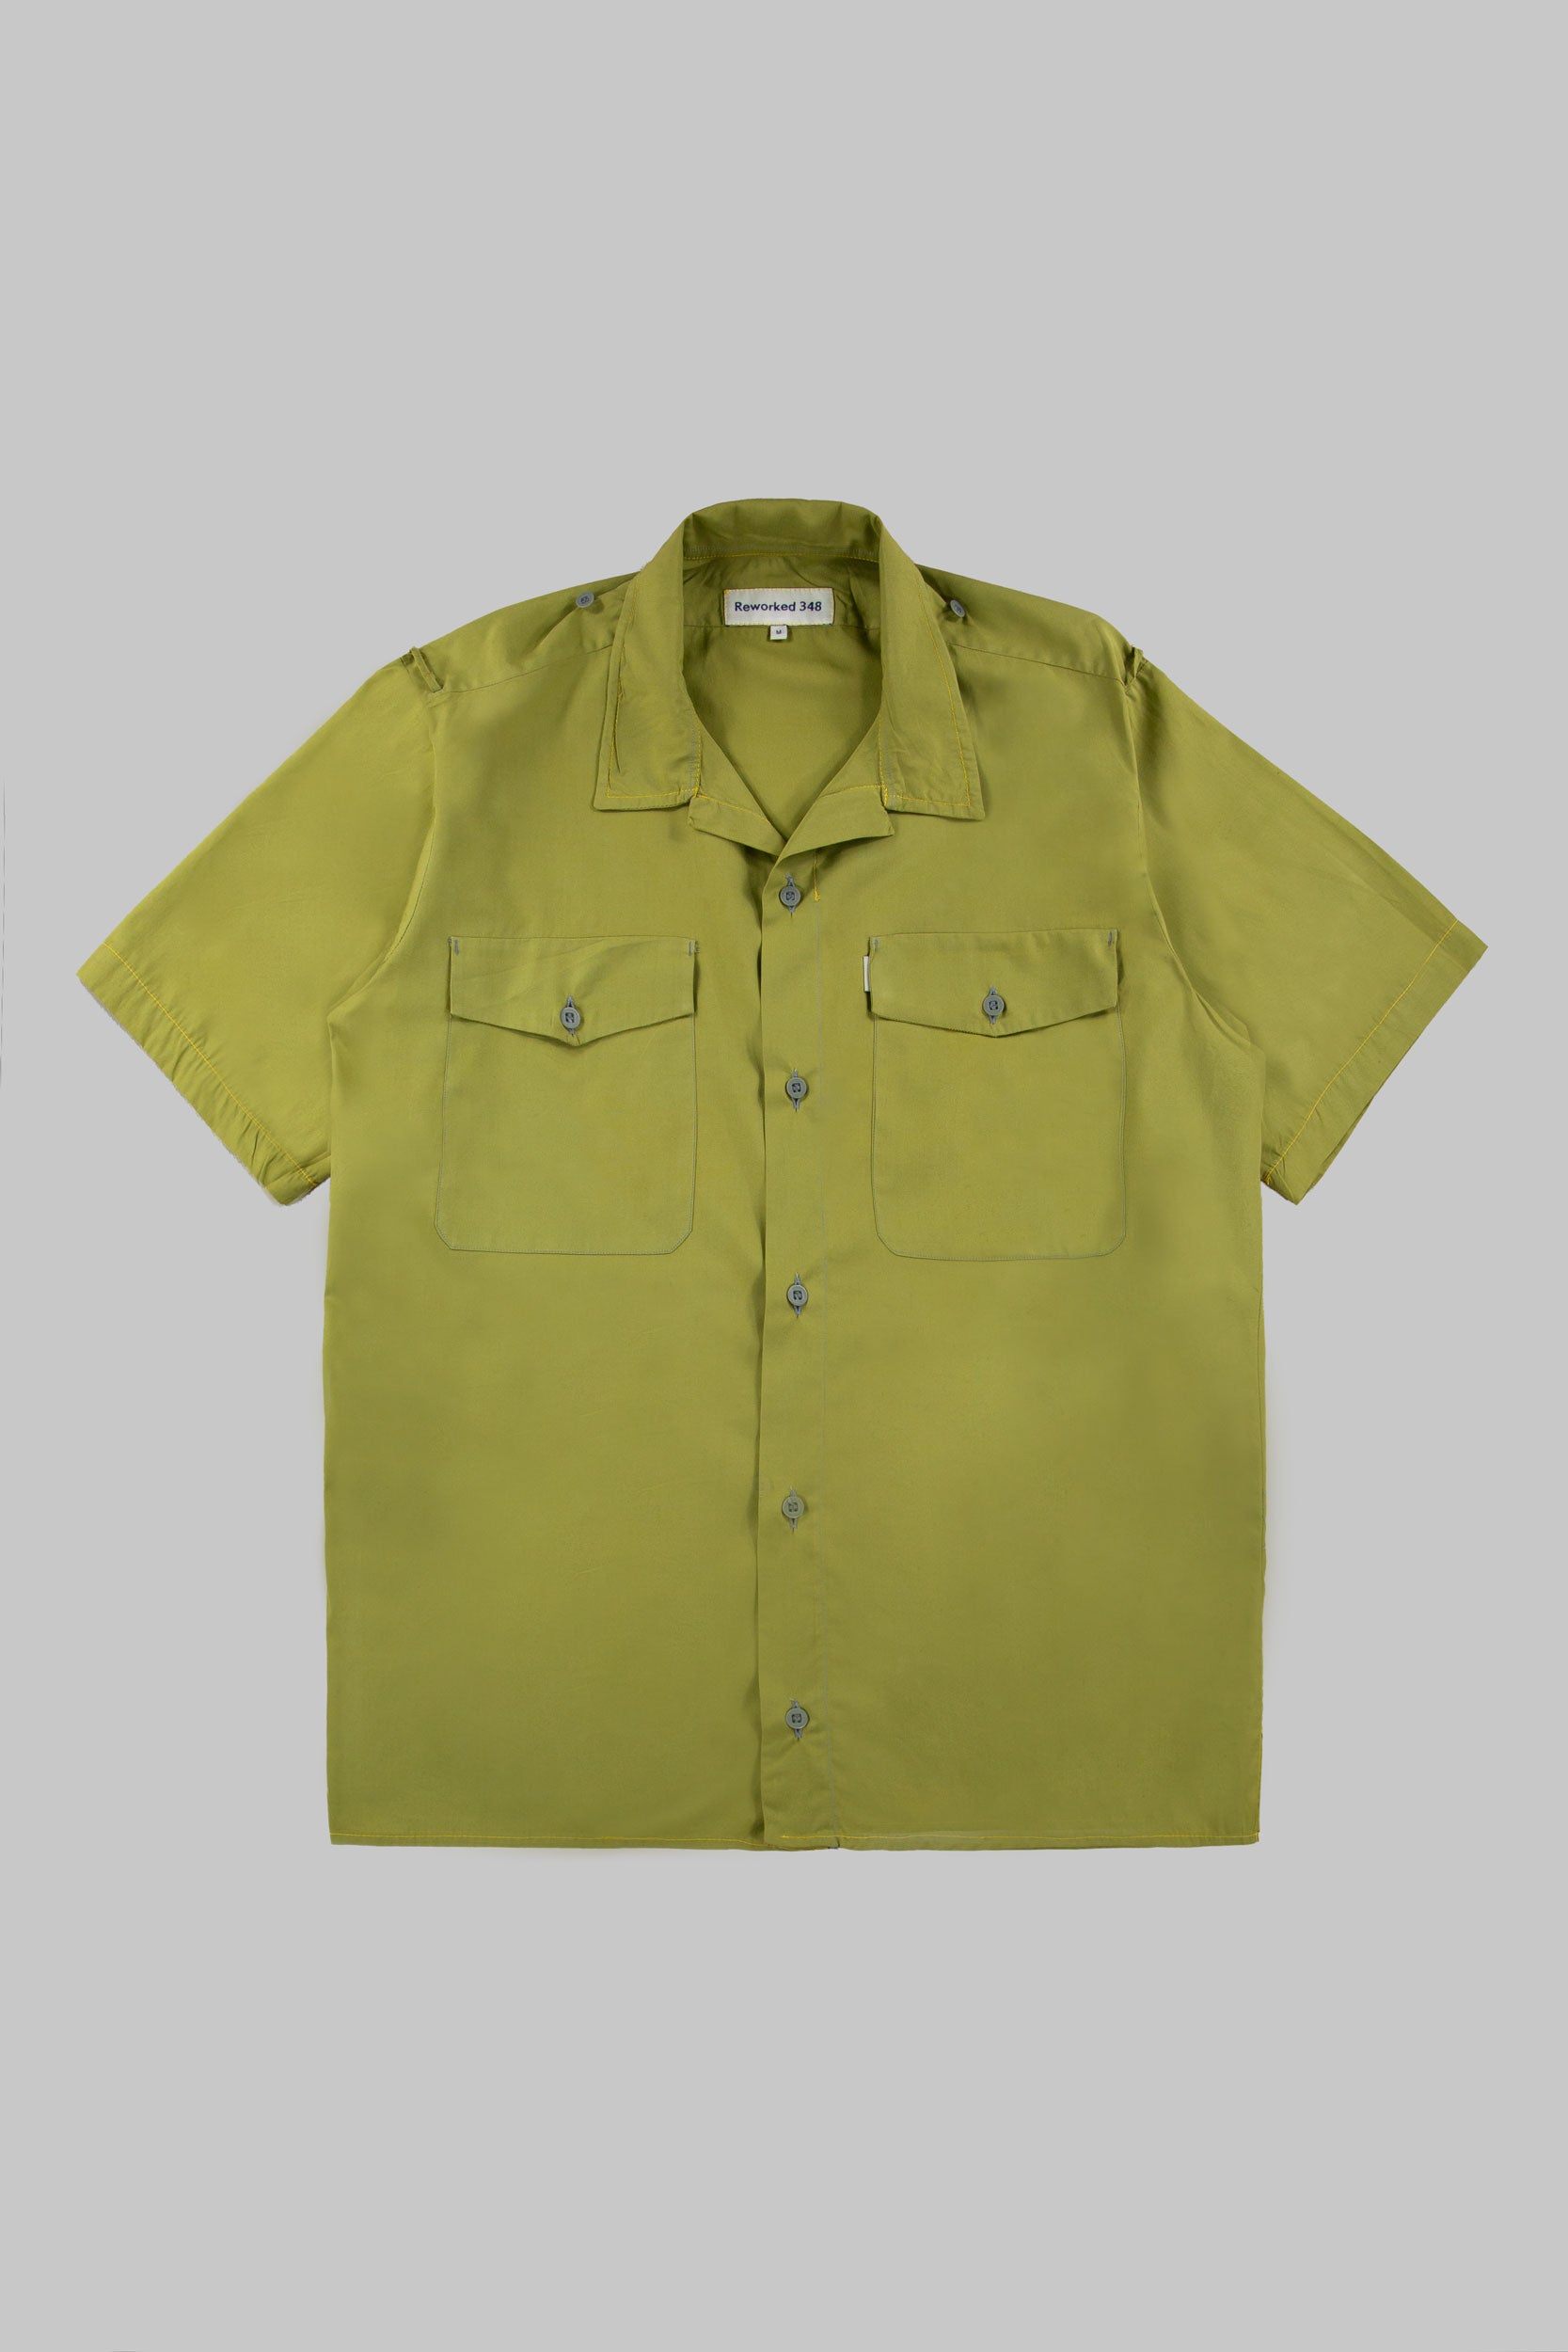 Tripps Shirt Mute Lime